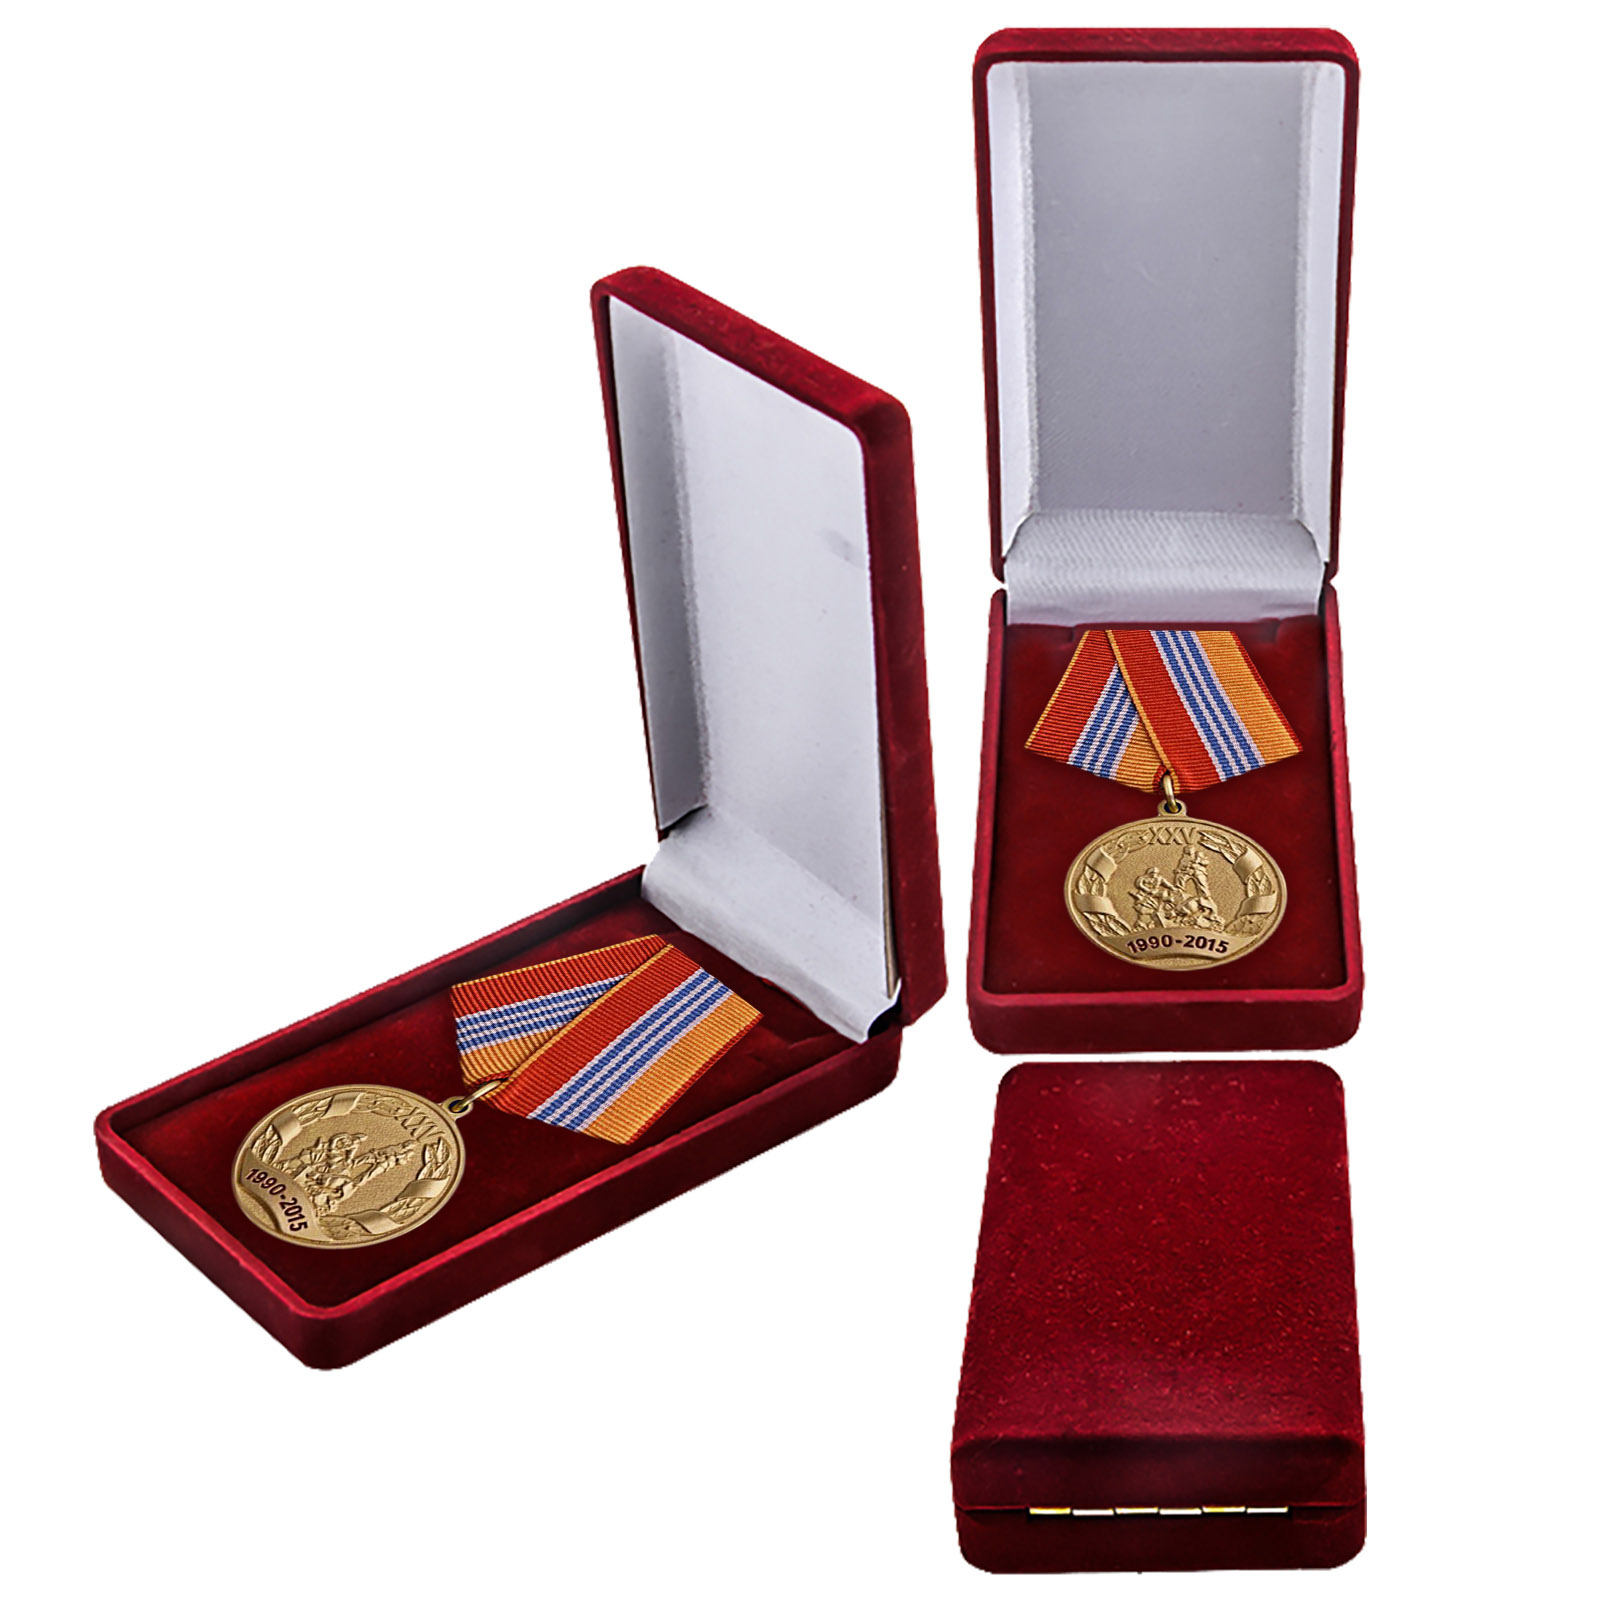 Купить ведомственную медаль "МЧС России 25 лет" в подарок